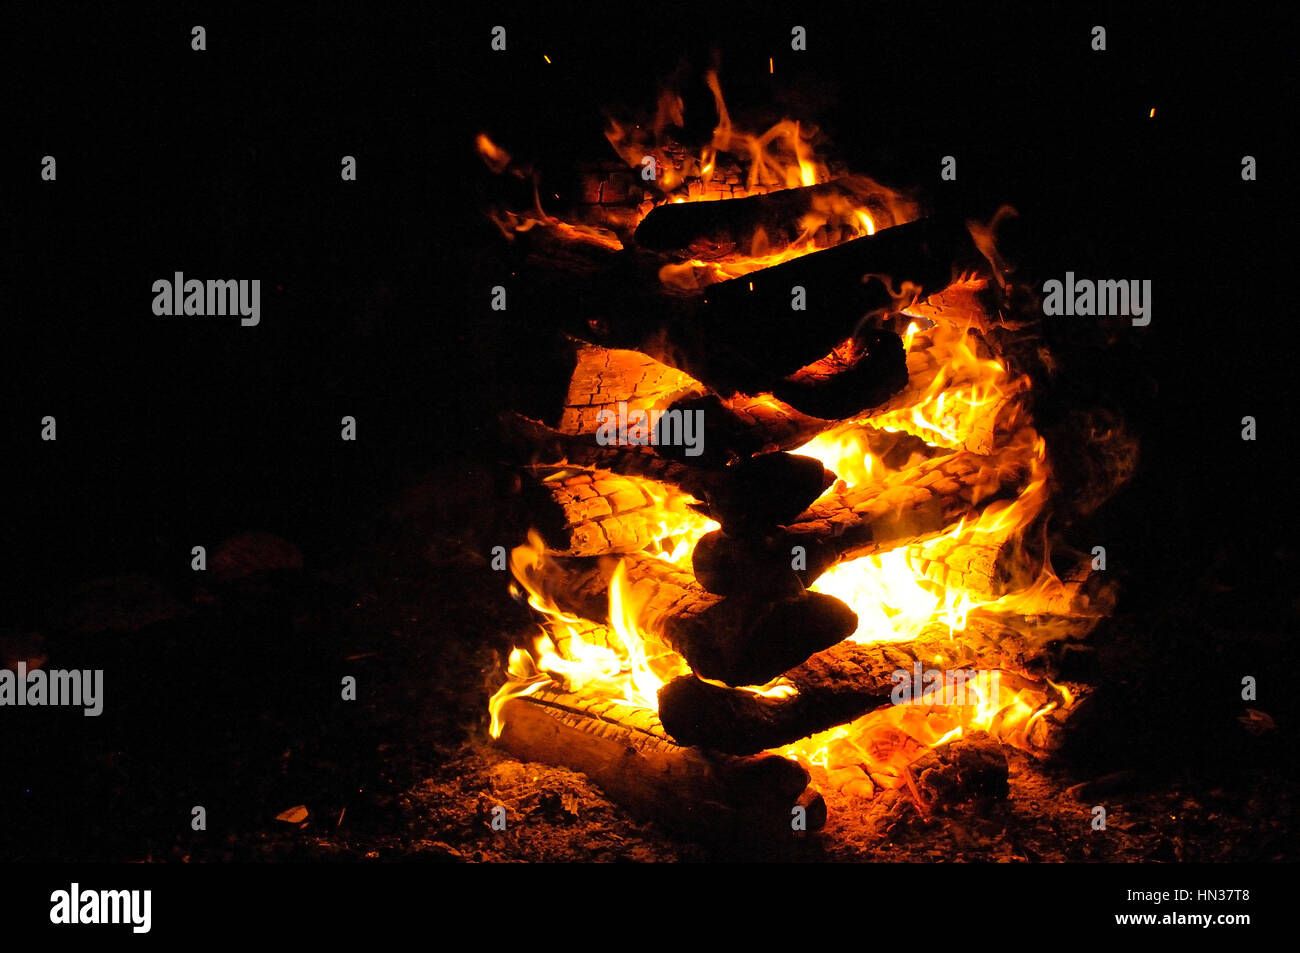 Campfire close up at night Stock Photo